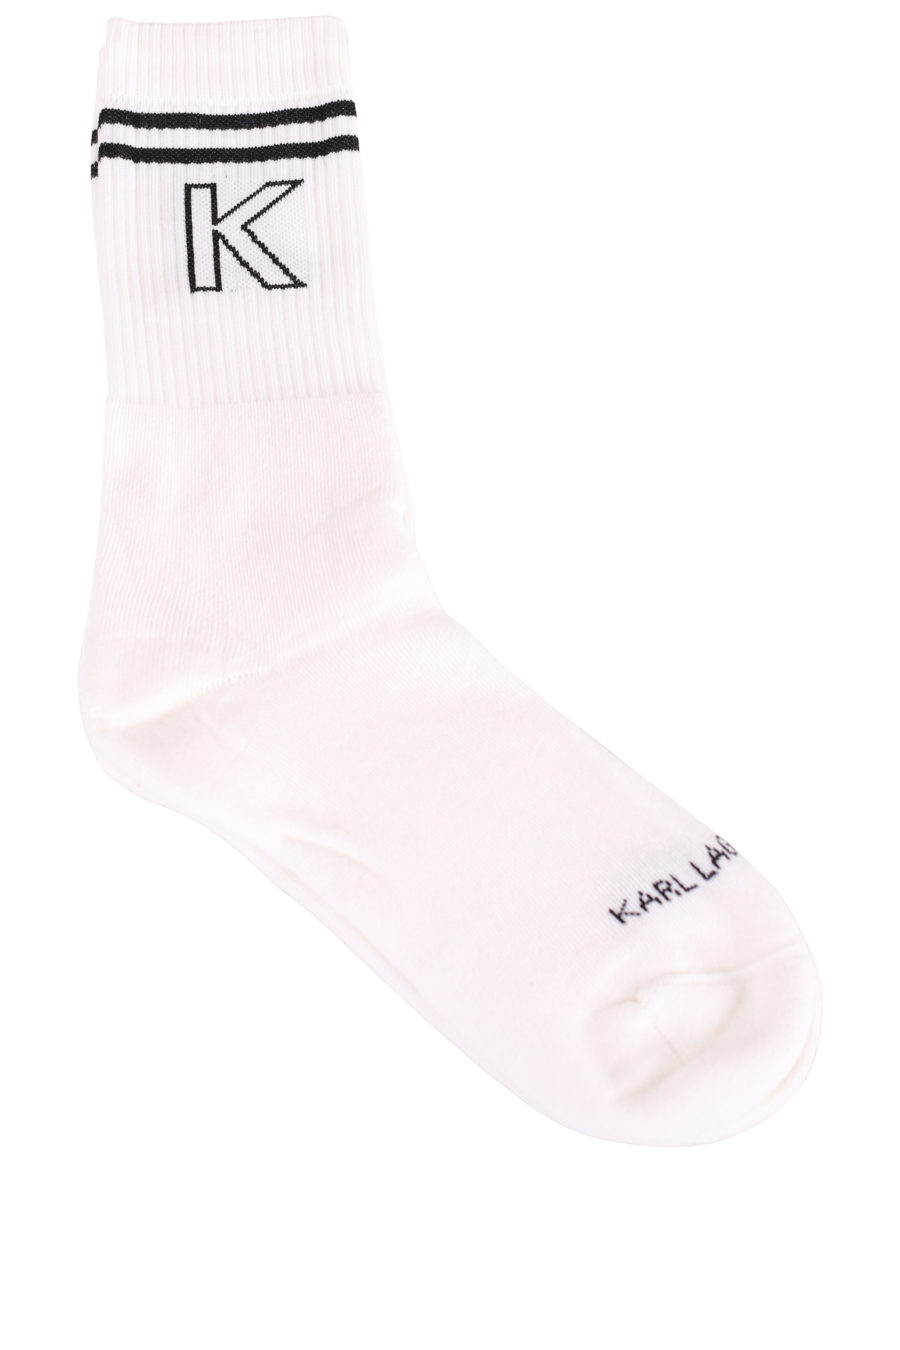 Weiße Socken mit schwarzem Logo - 1e01e776d4e4c6dfe08033ed2309a948d4a7261d